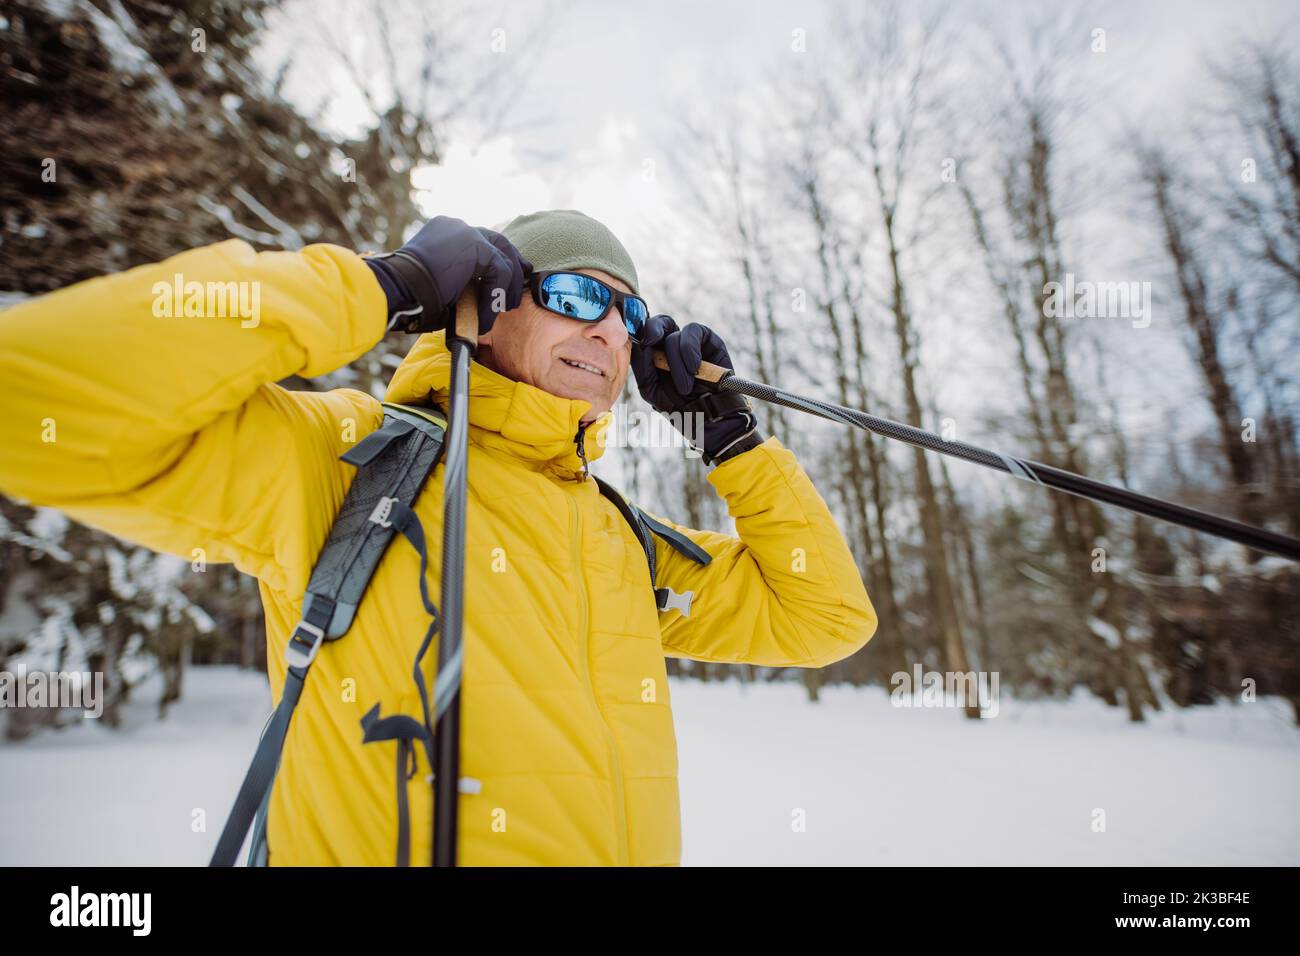 Homme senior qui met des lunettes de neige, se préparant pour une promenade dans une forêt enneigée. Banque D'Images